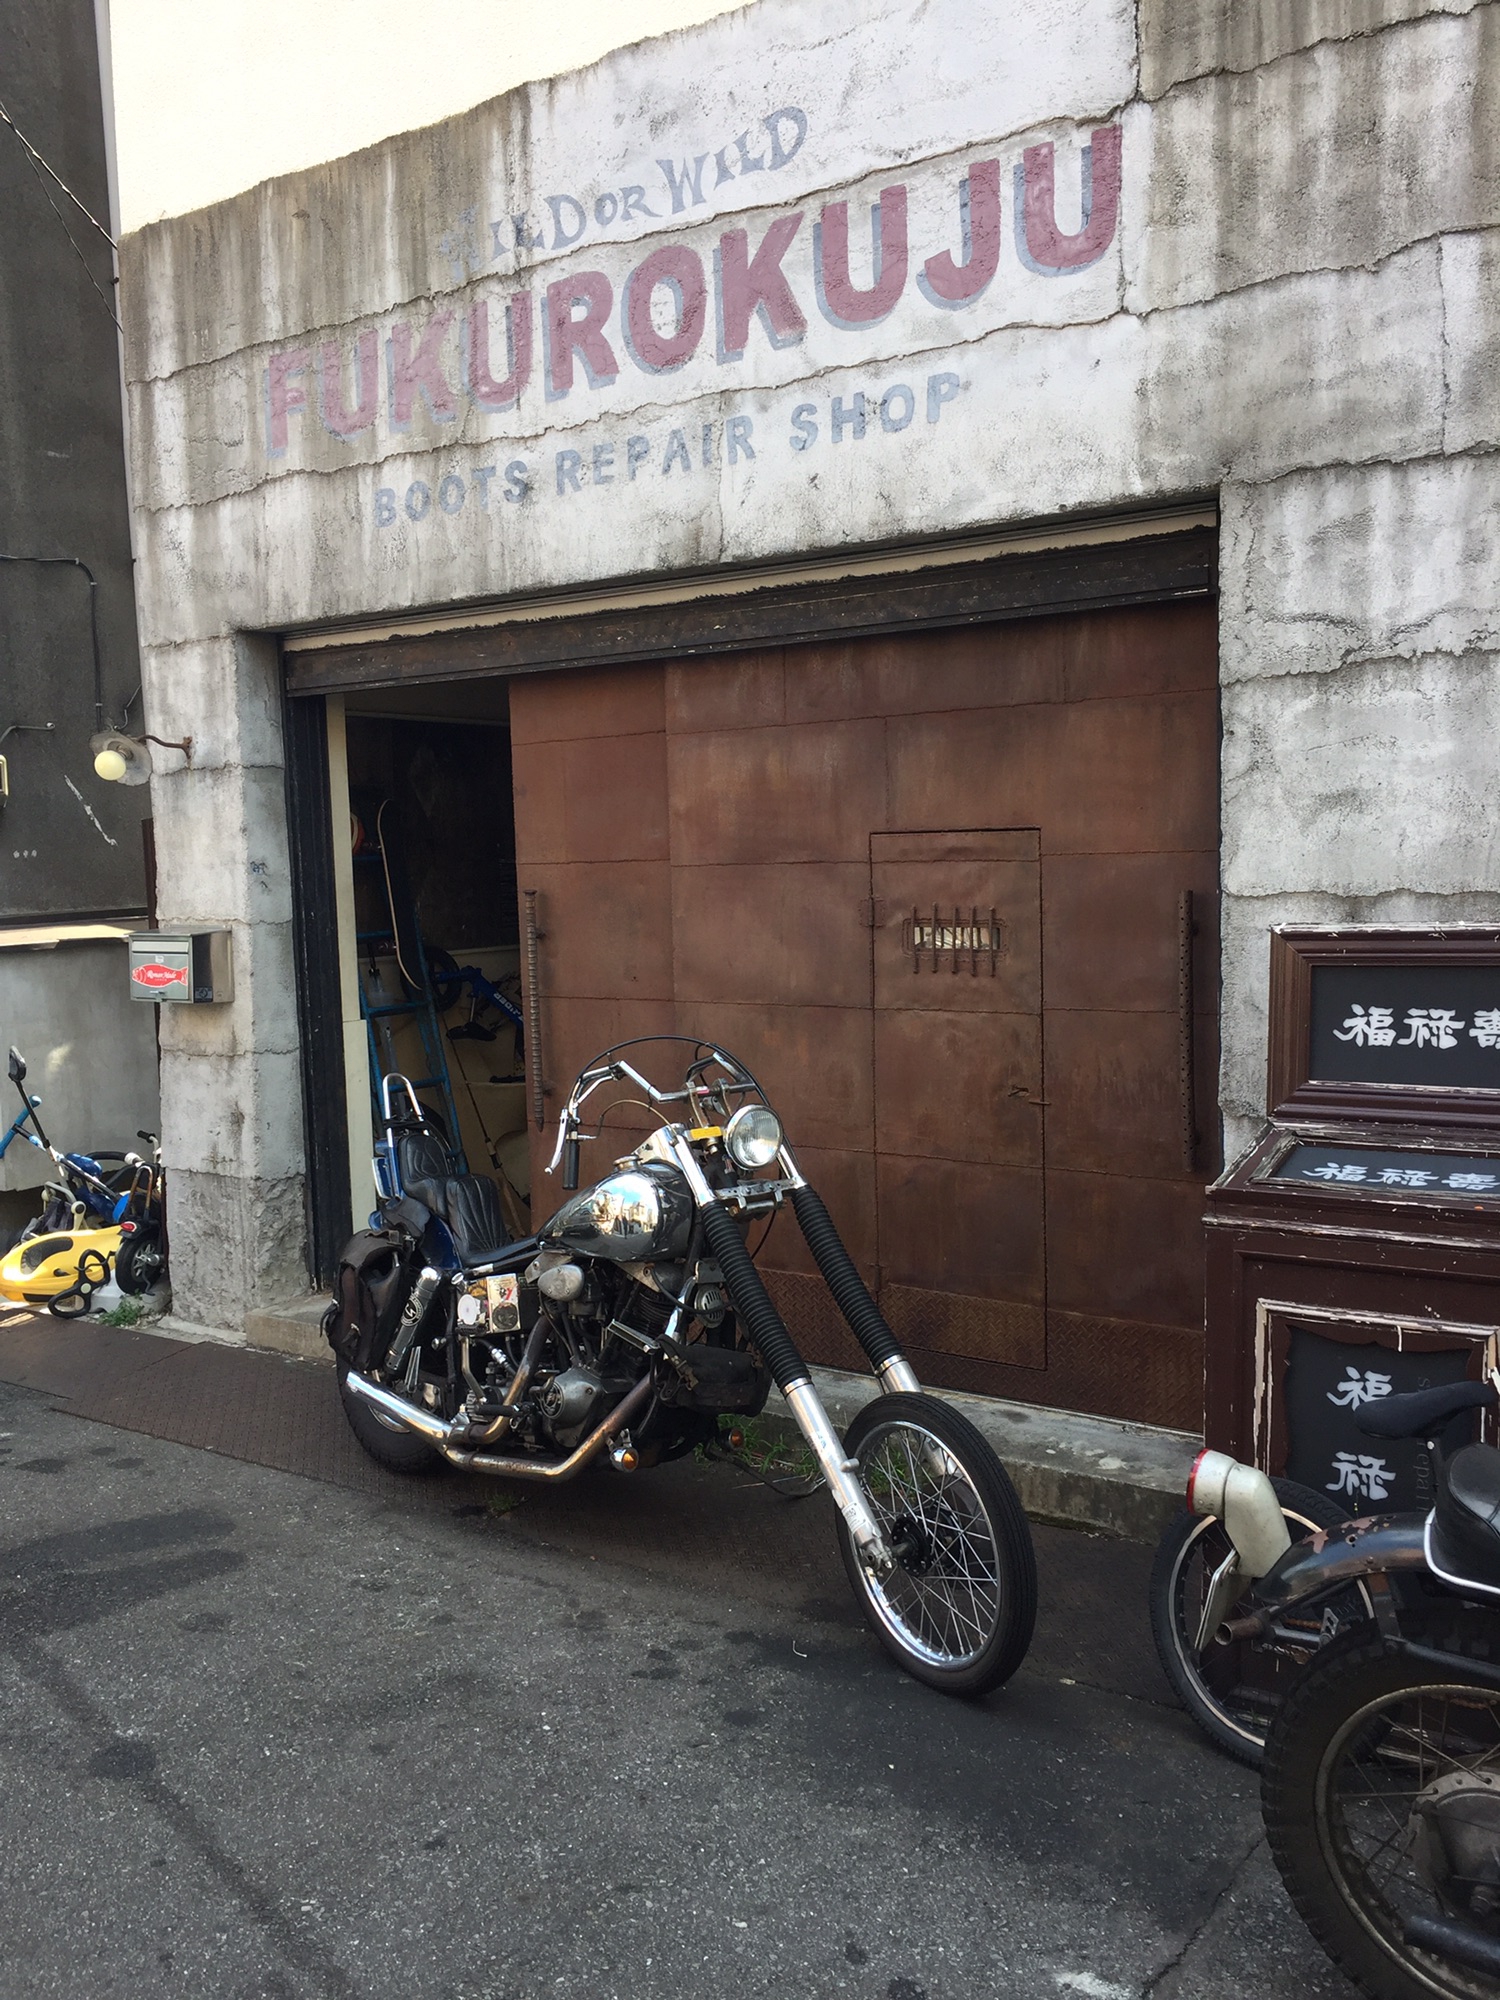 kawasaki KL250 | MAHALO‼︎ motorcycle.